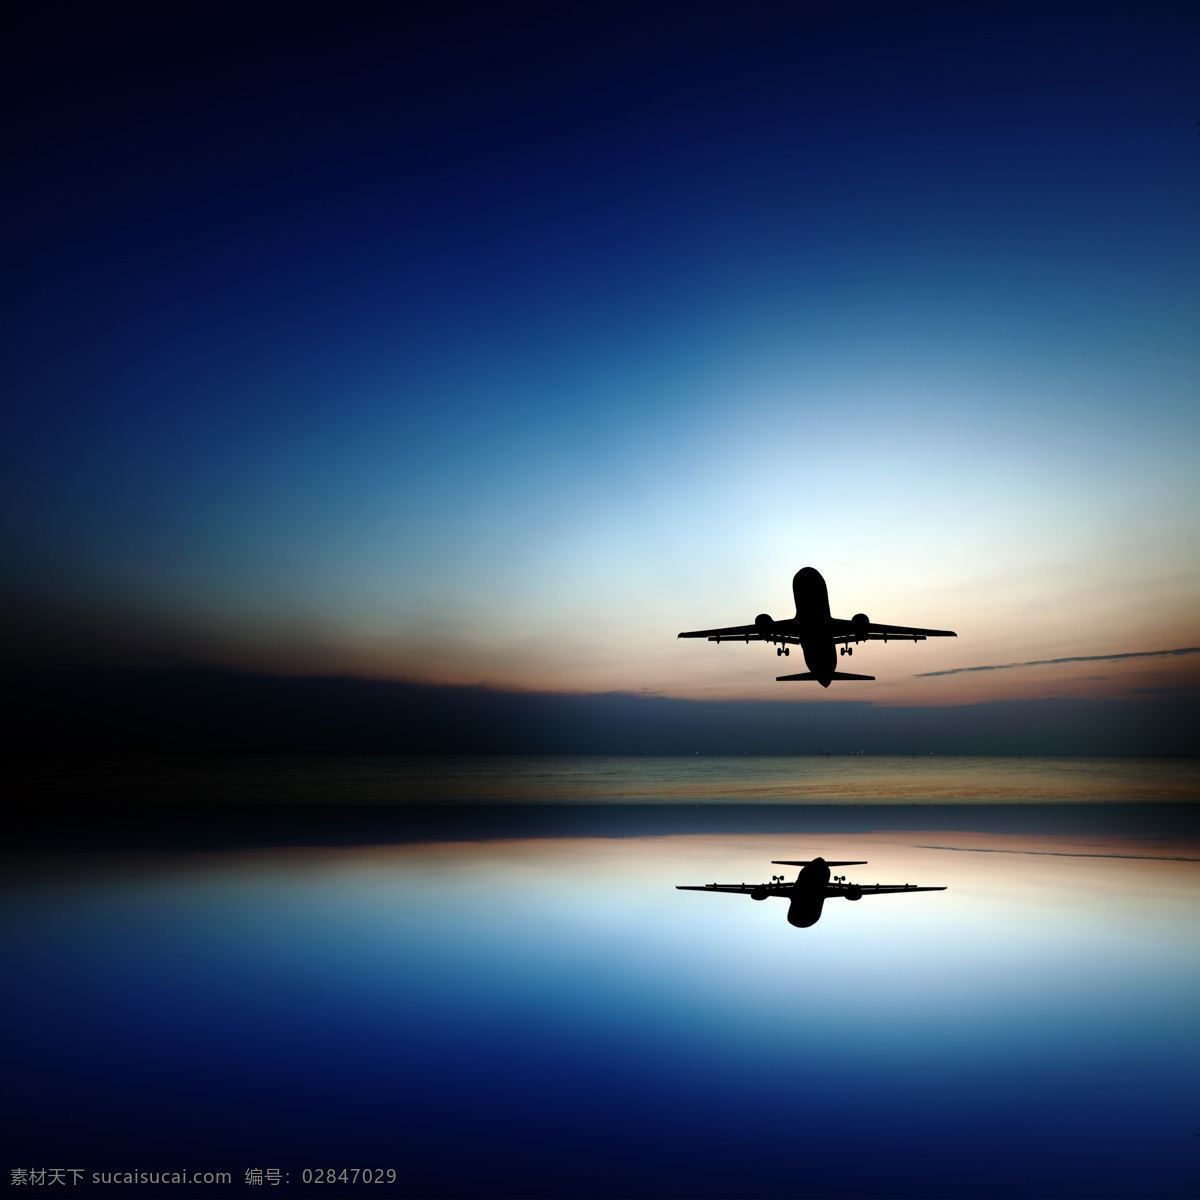 飞机 水面 倒影 飞机剪影 客机 航空飞机 航天飞机 水面倒影 飞机图片 现代科技